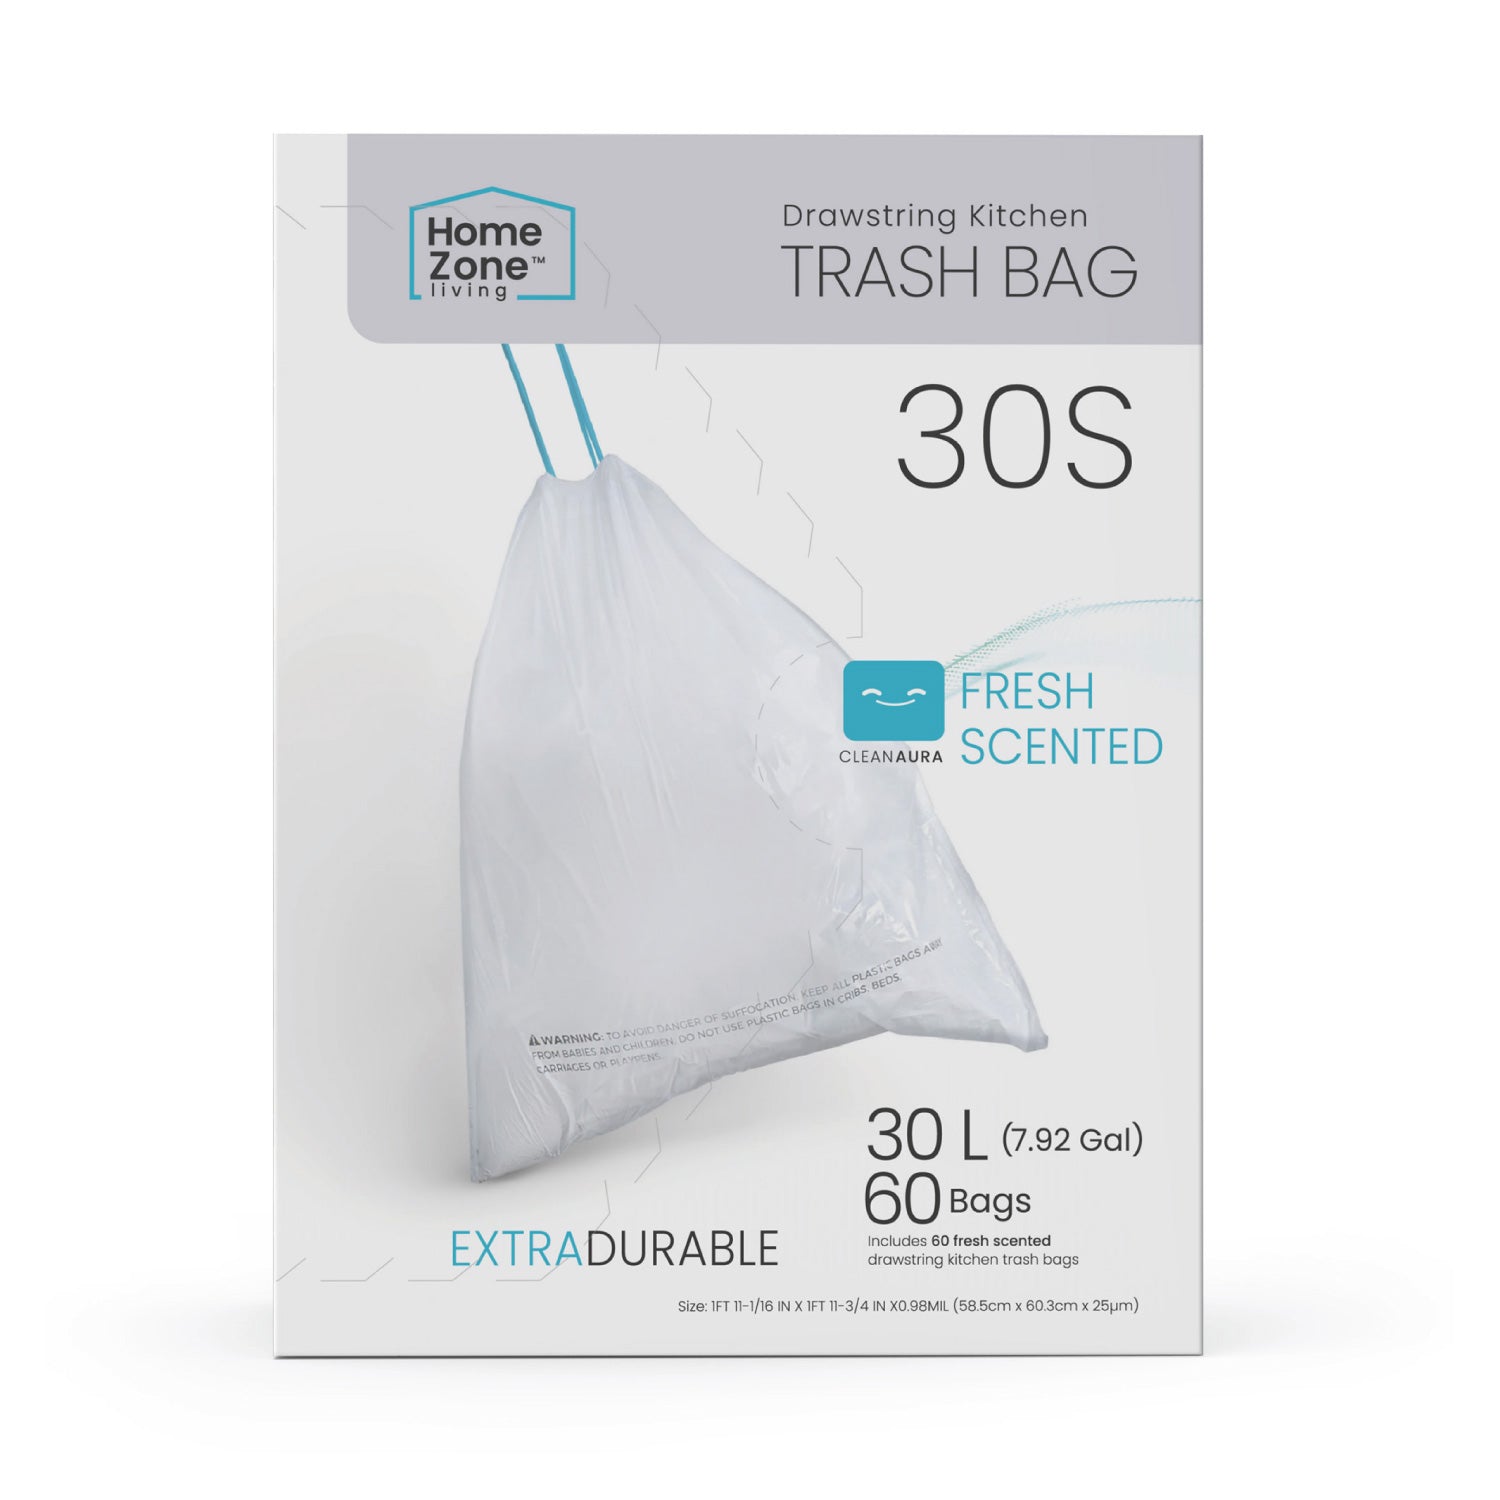 Home Smart HS-01784 Trash Bag